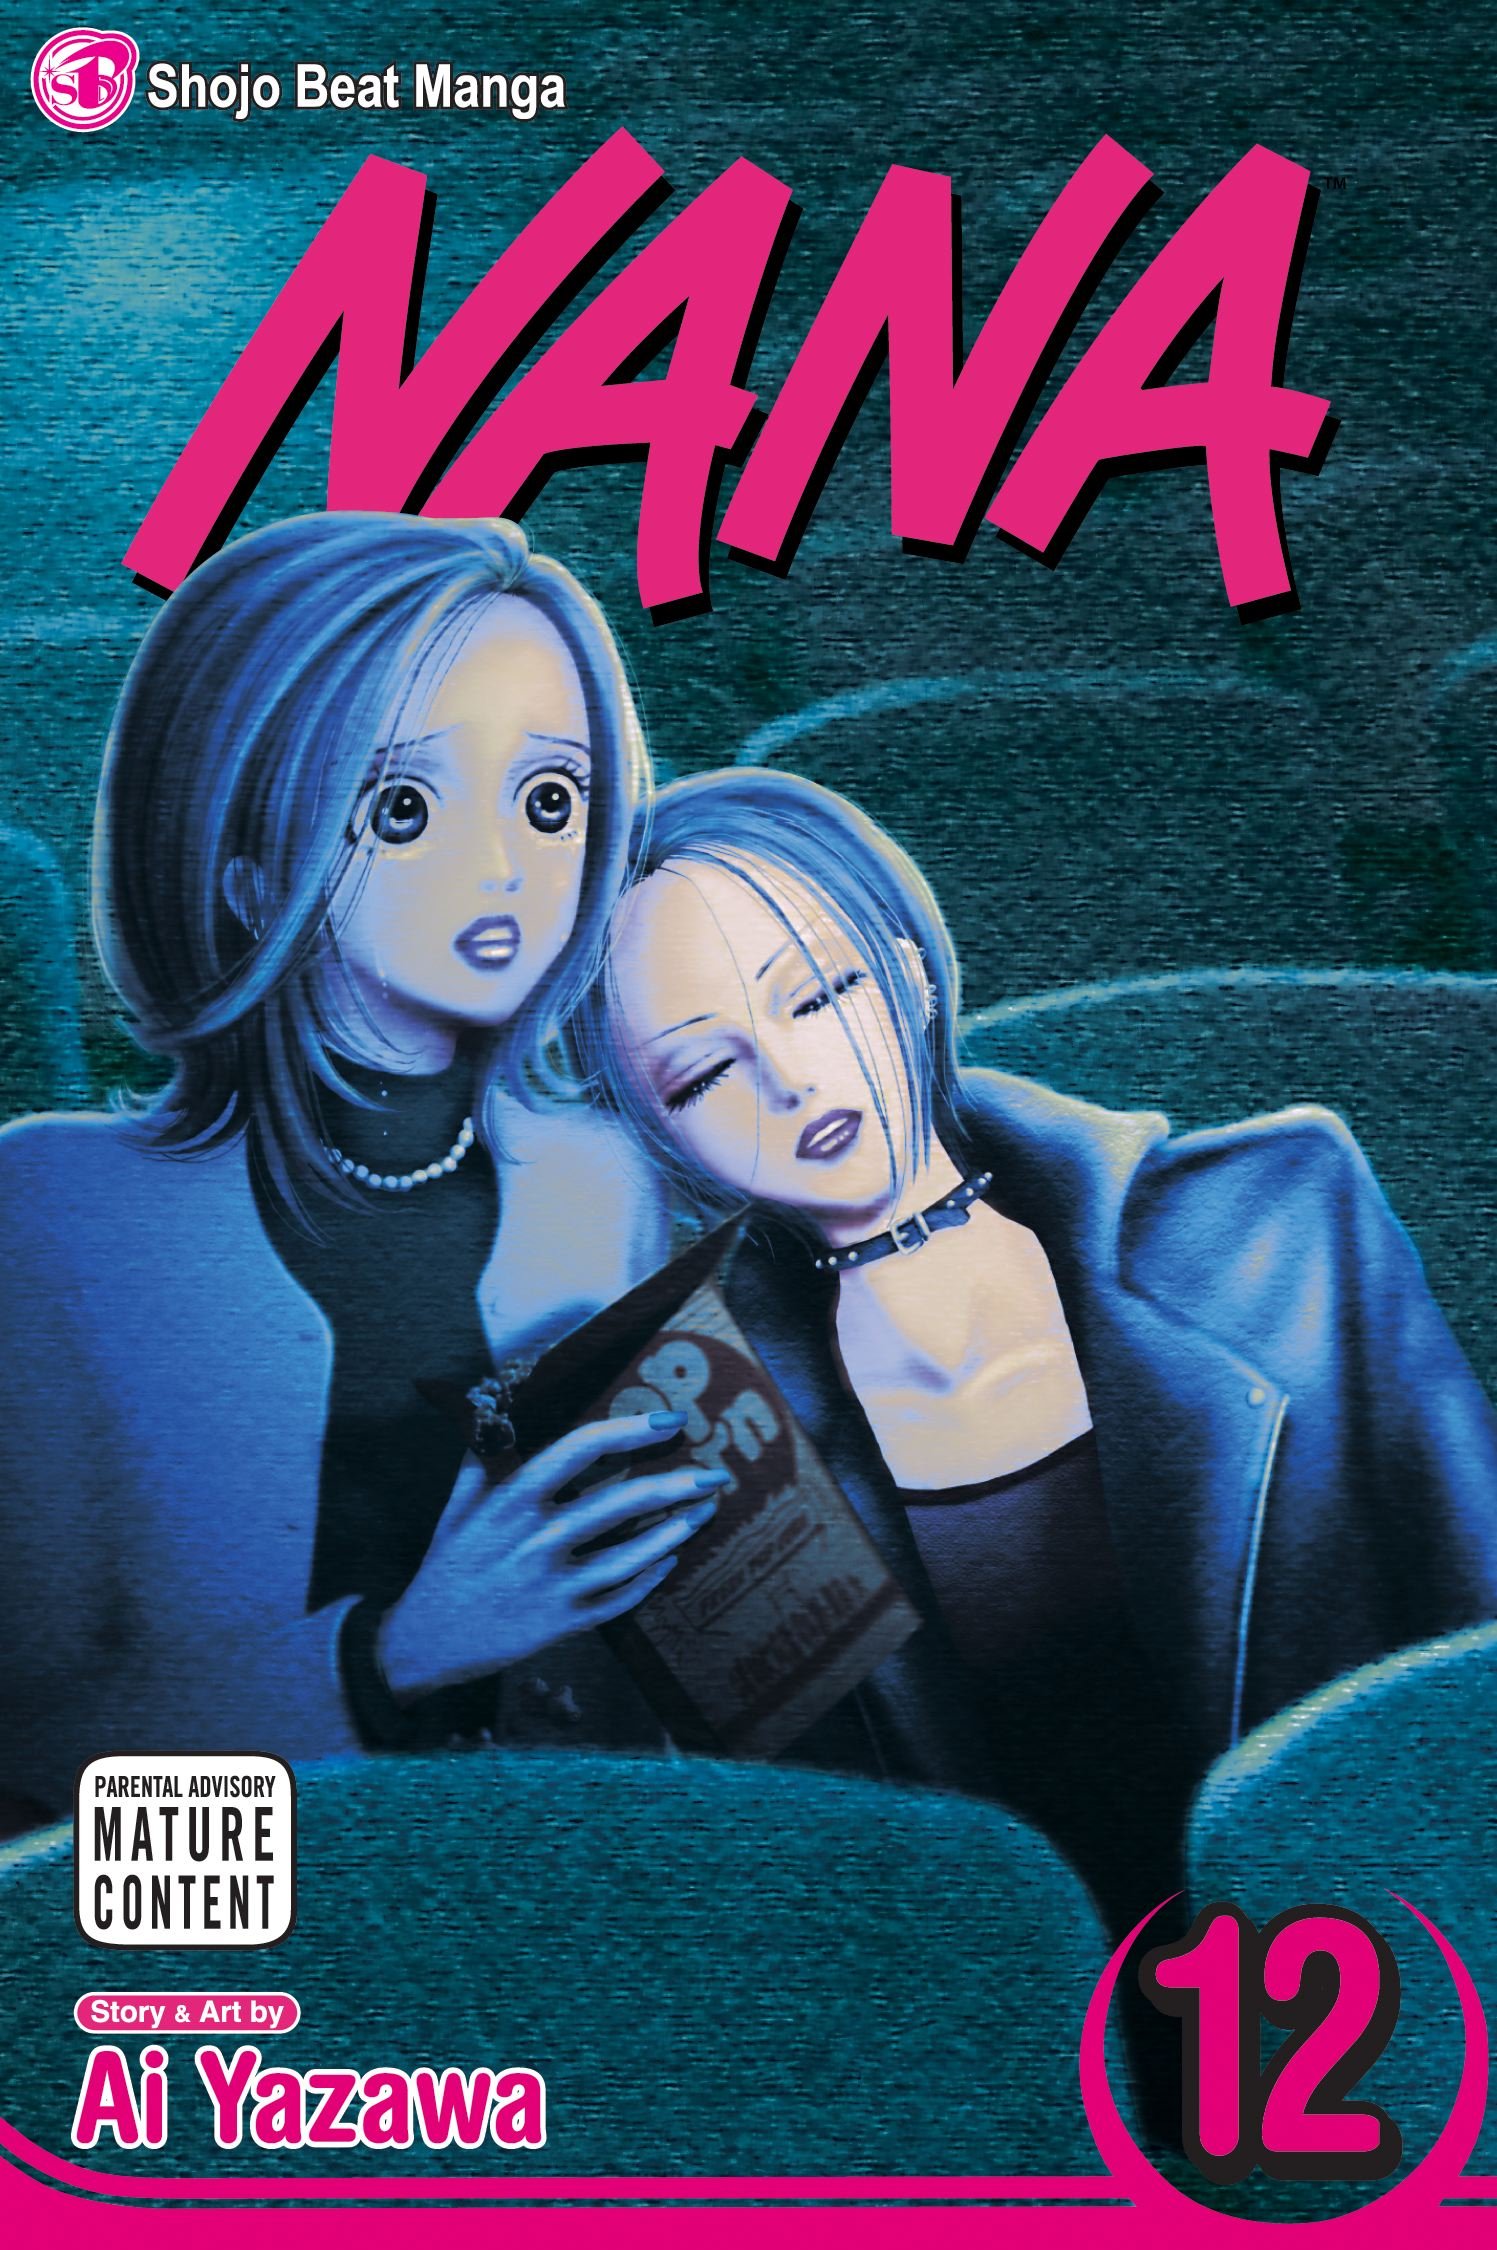 Manga huyền thoại vừa cán mốc hơn 50 triệu bản in